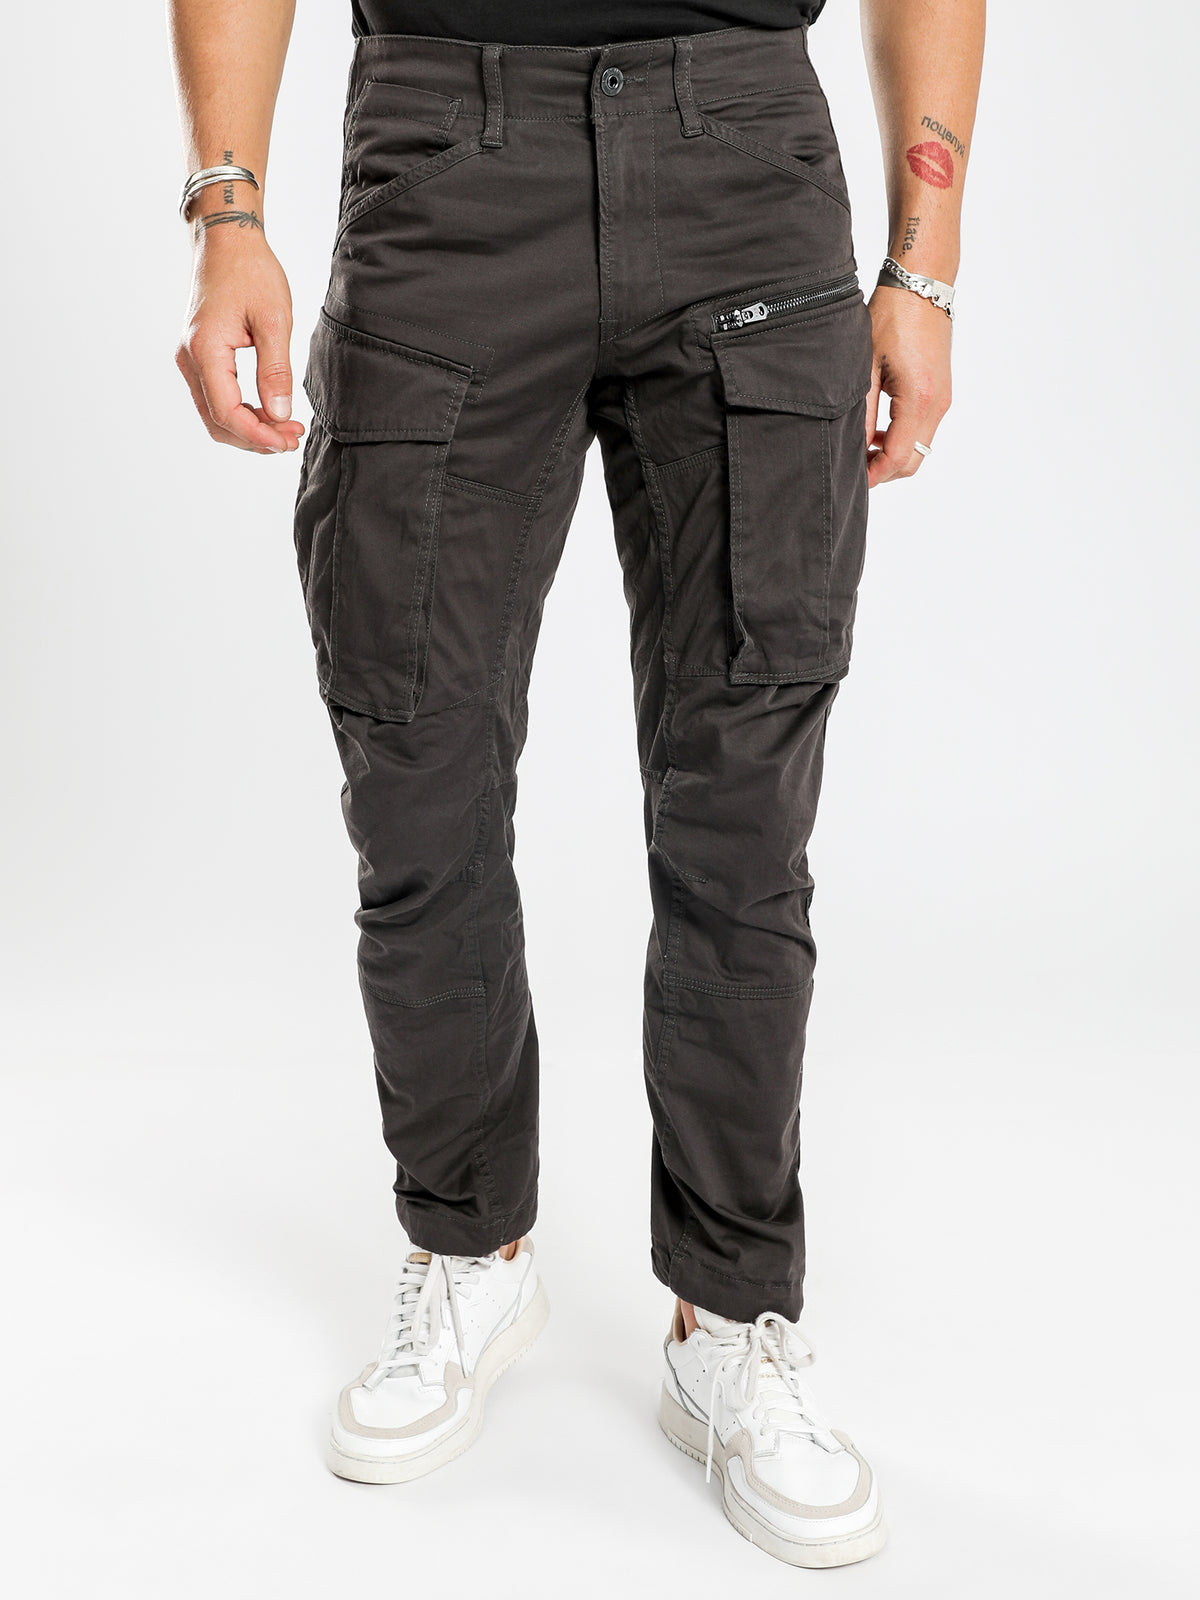 Rovic Zip 3D Tapered Cargo Pants in Raven Grey